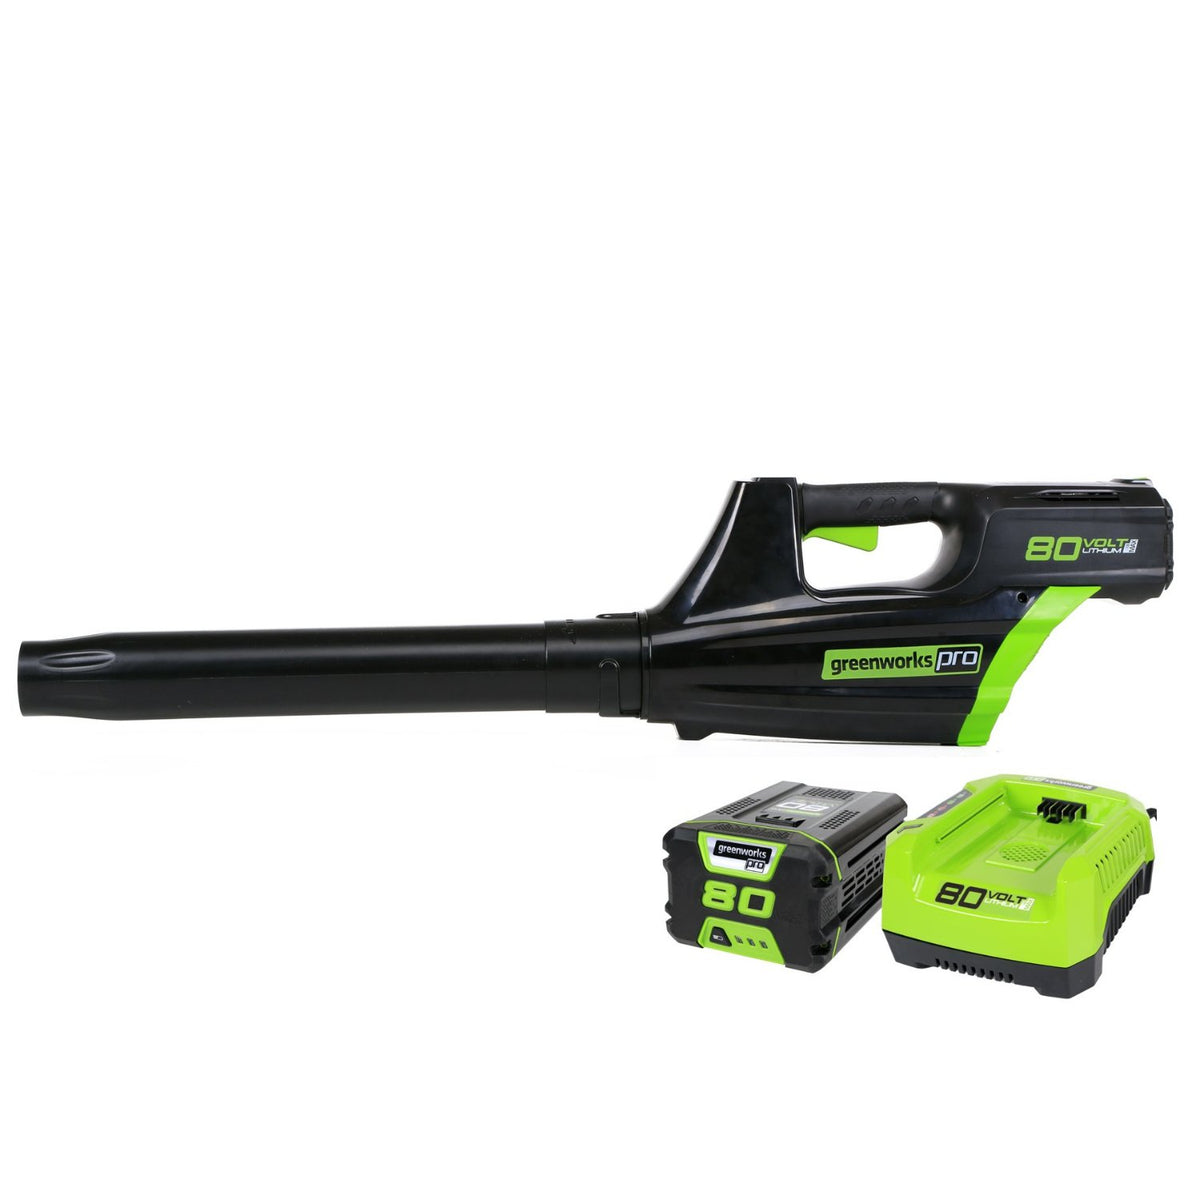 GreenWorks 2400102 Cordless Leaf Blower, 3 Speed, 80 Volt